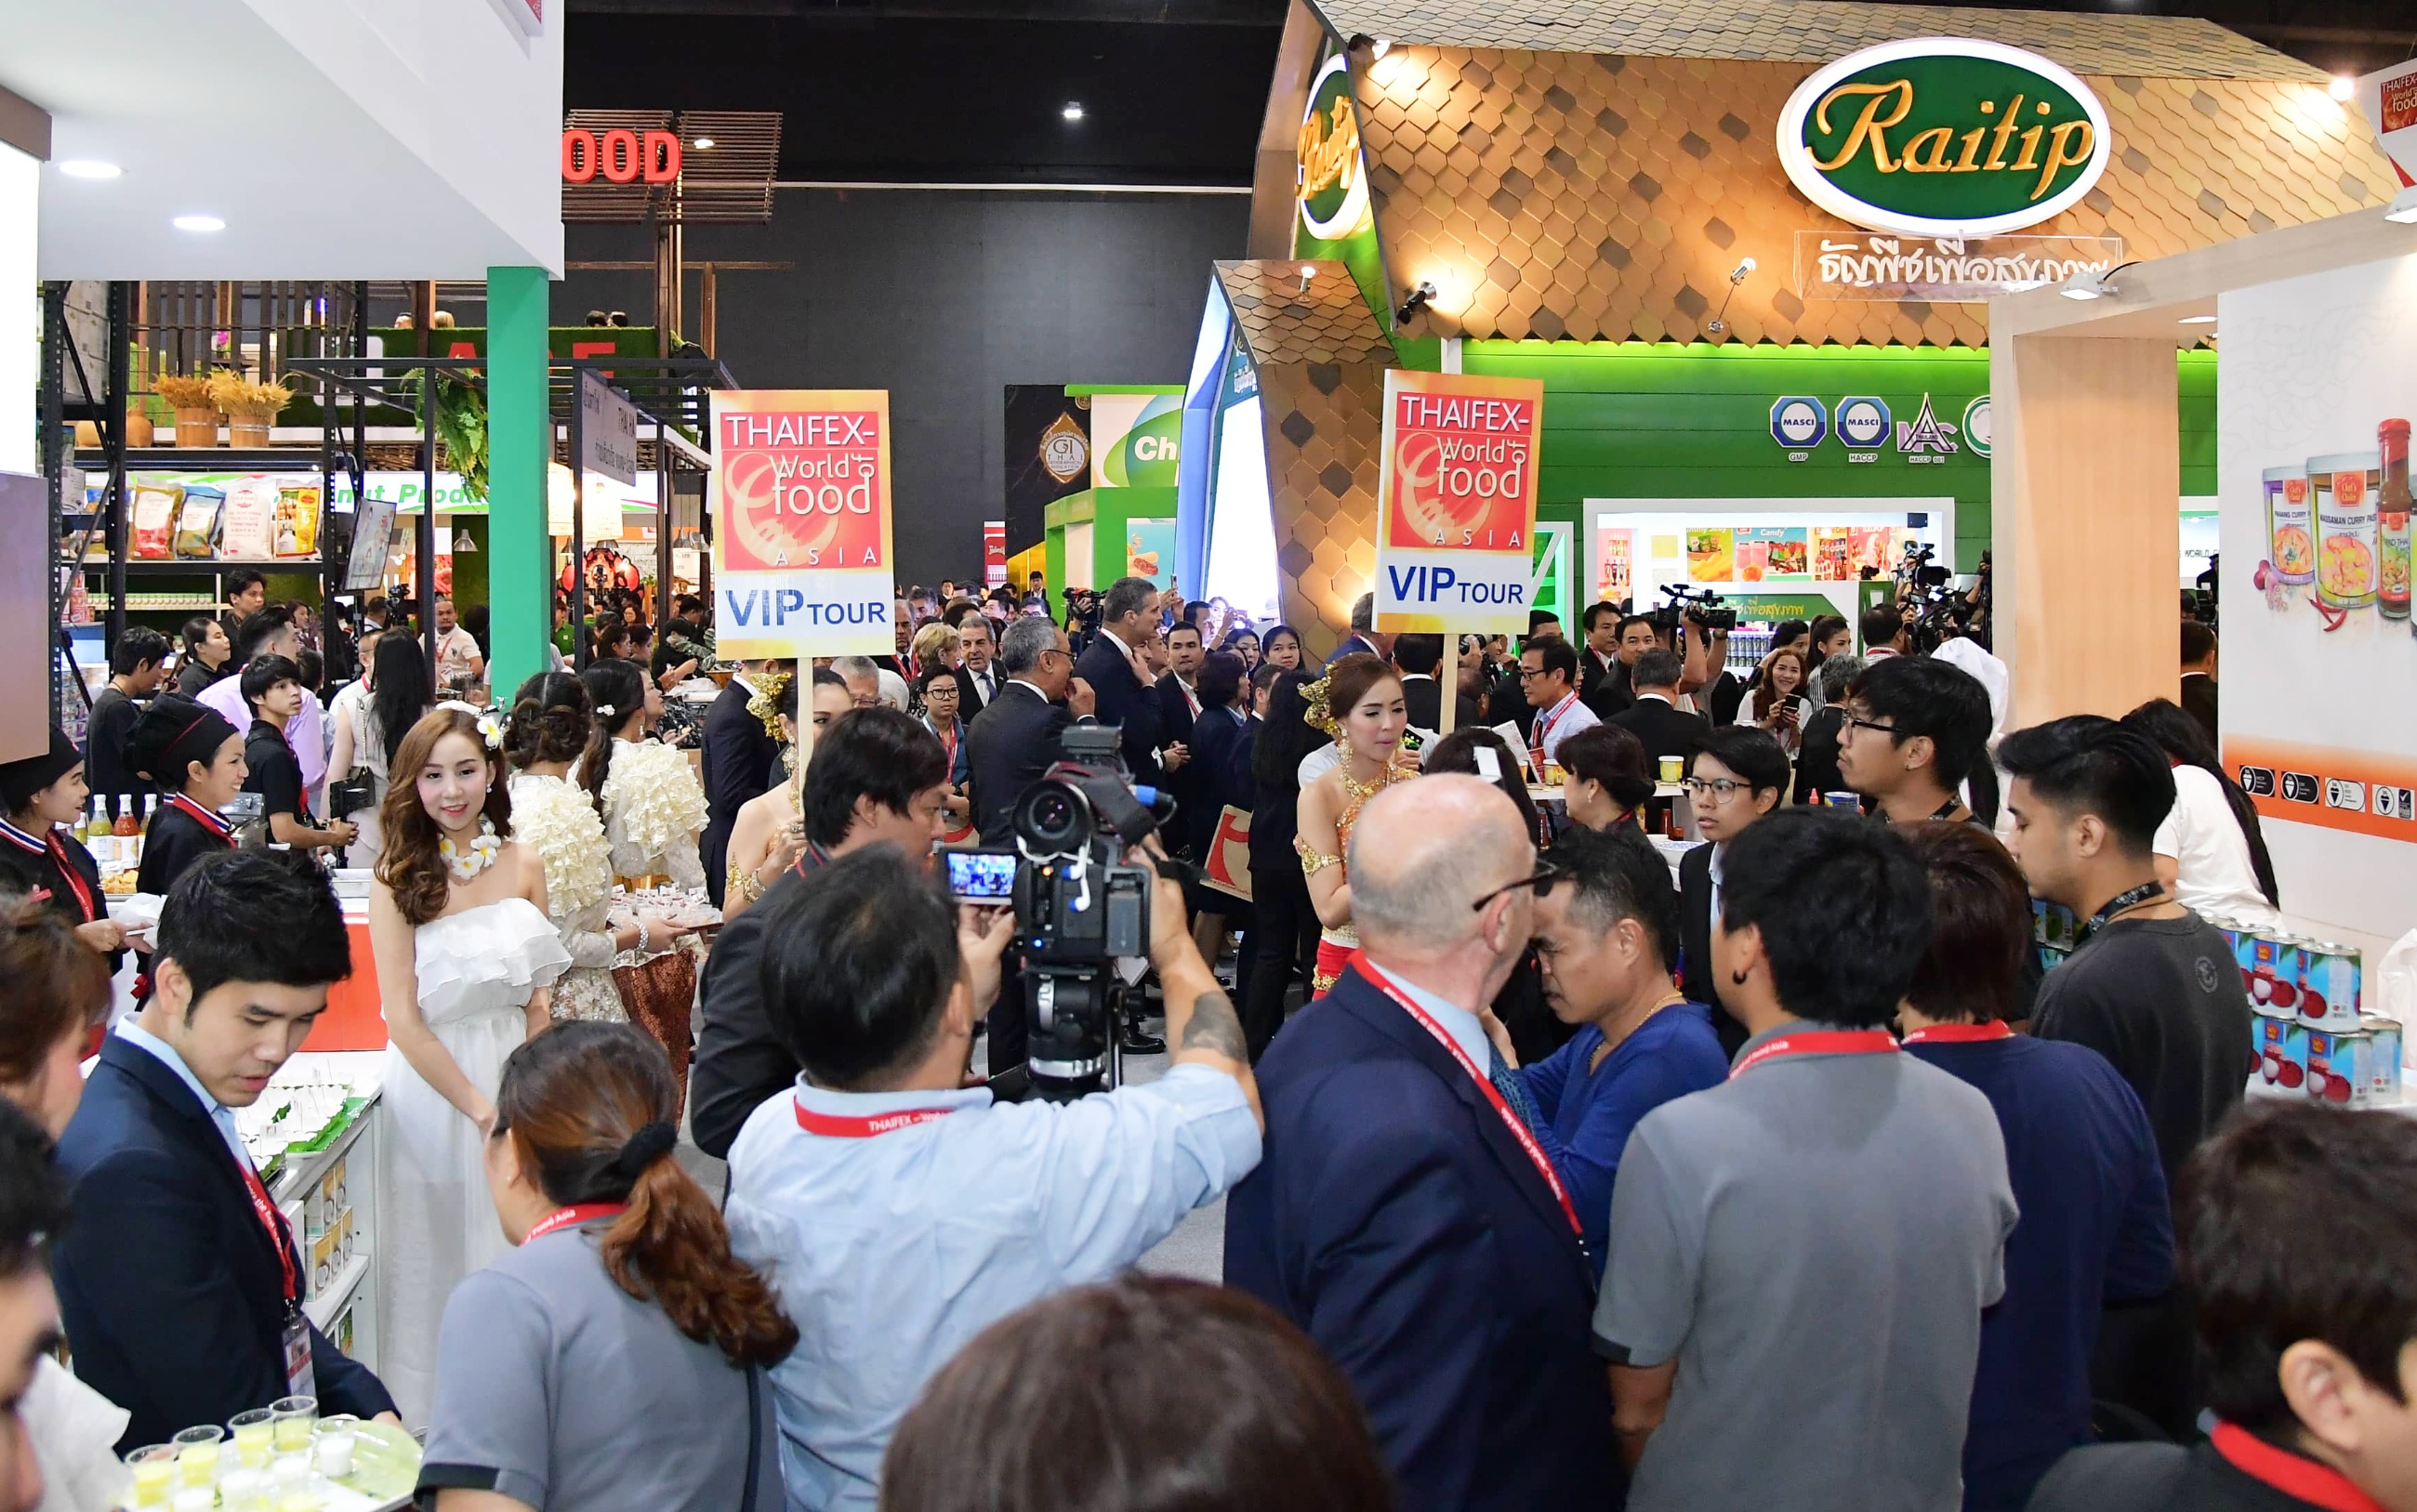 2015亚洲世界食品博览会 — 专业领域实现两位数增长